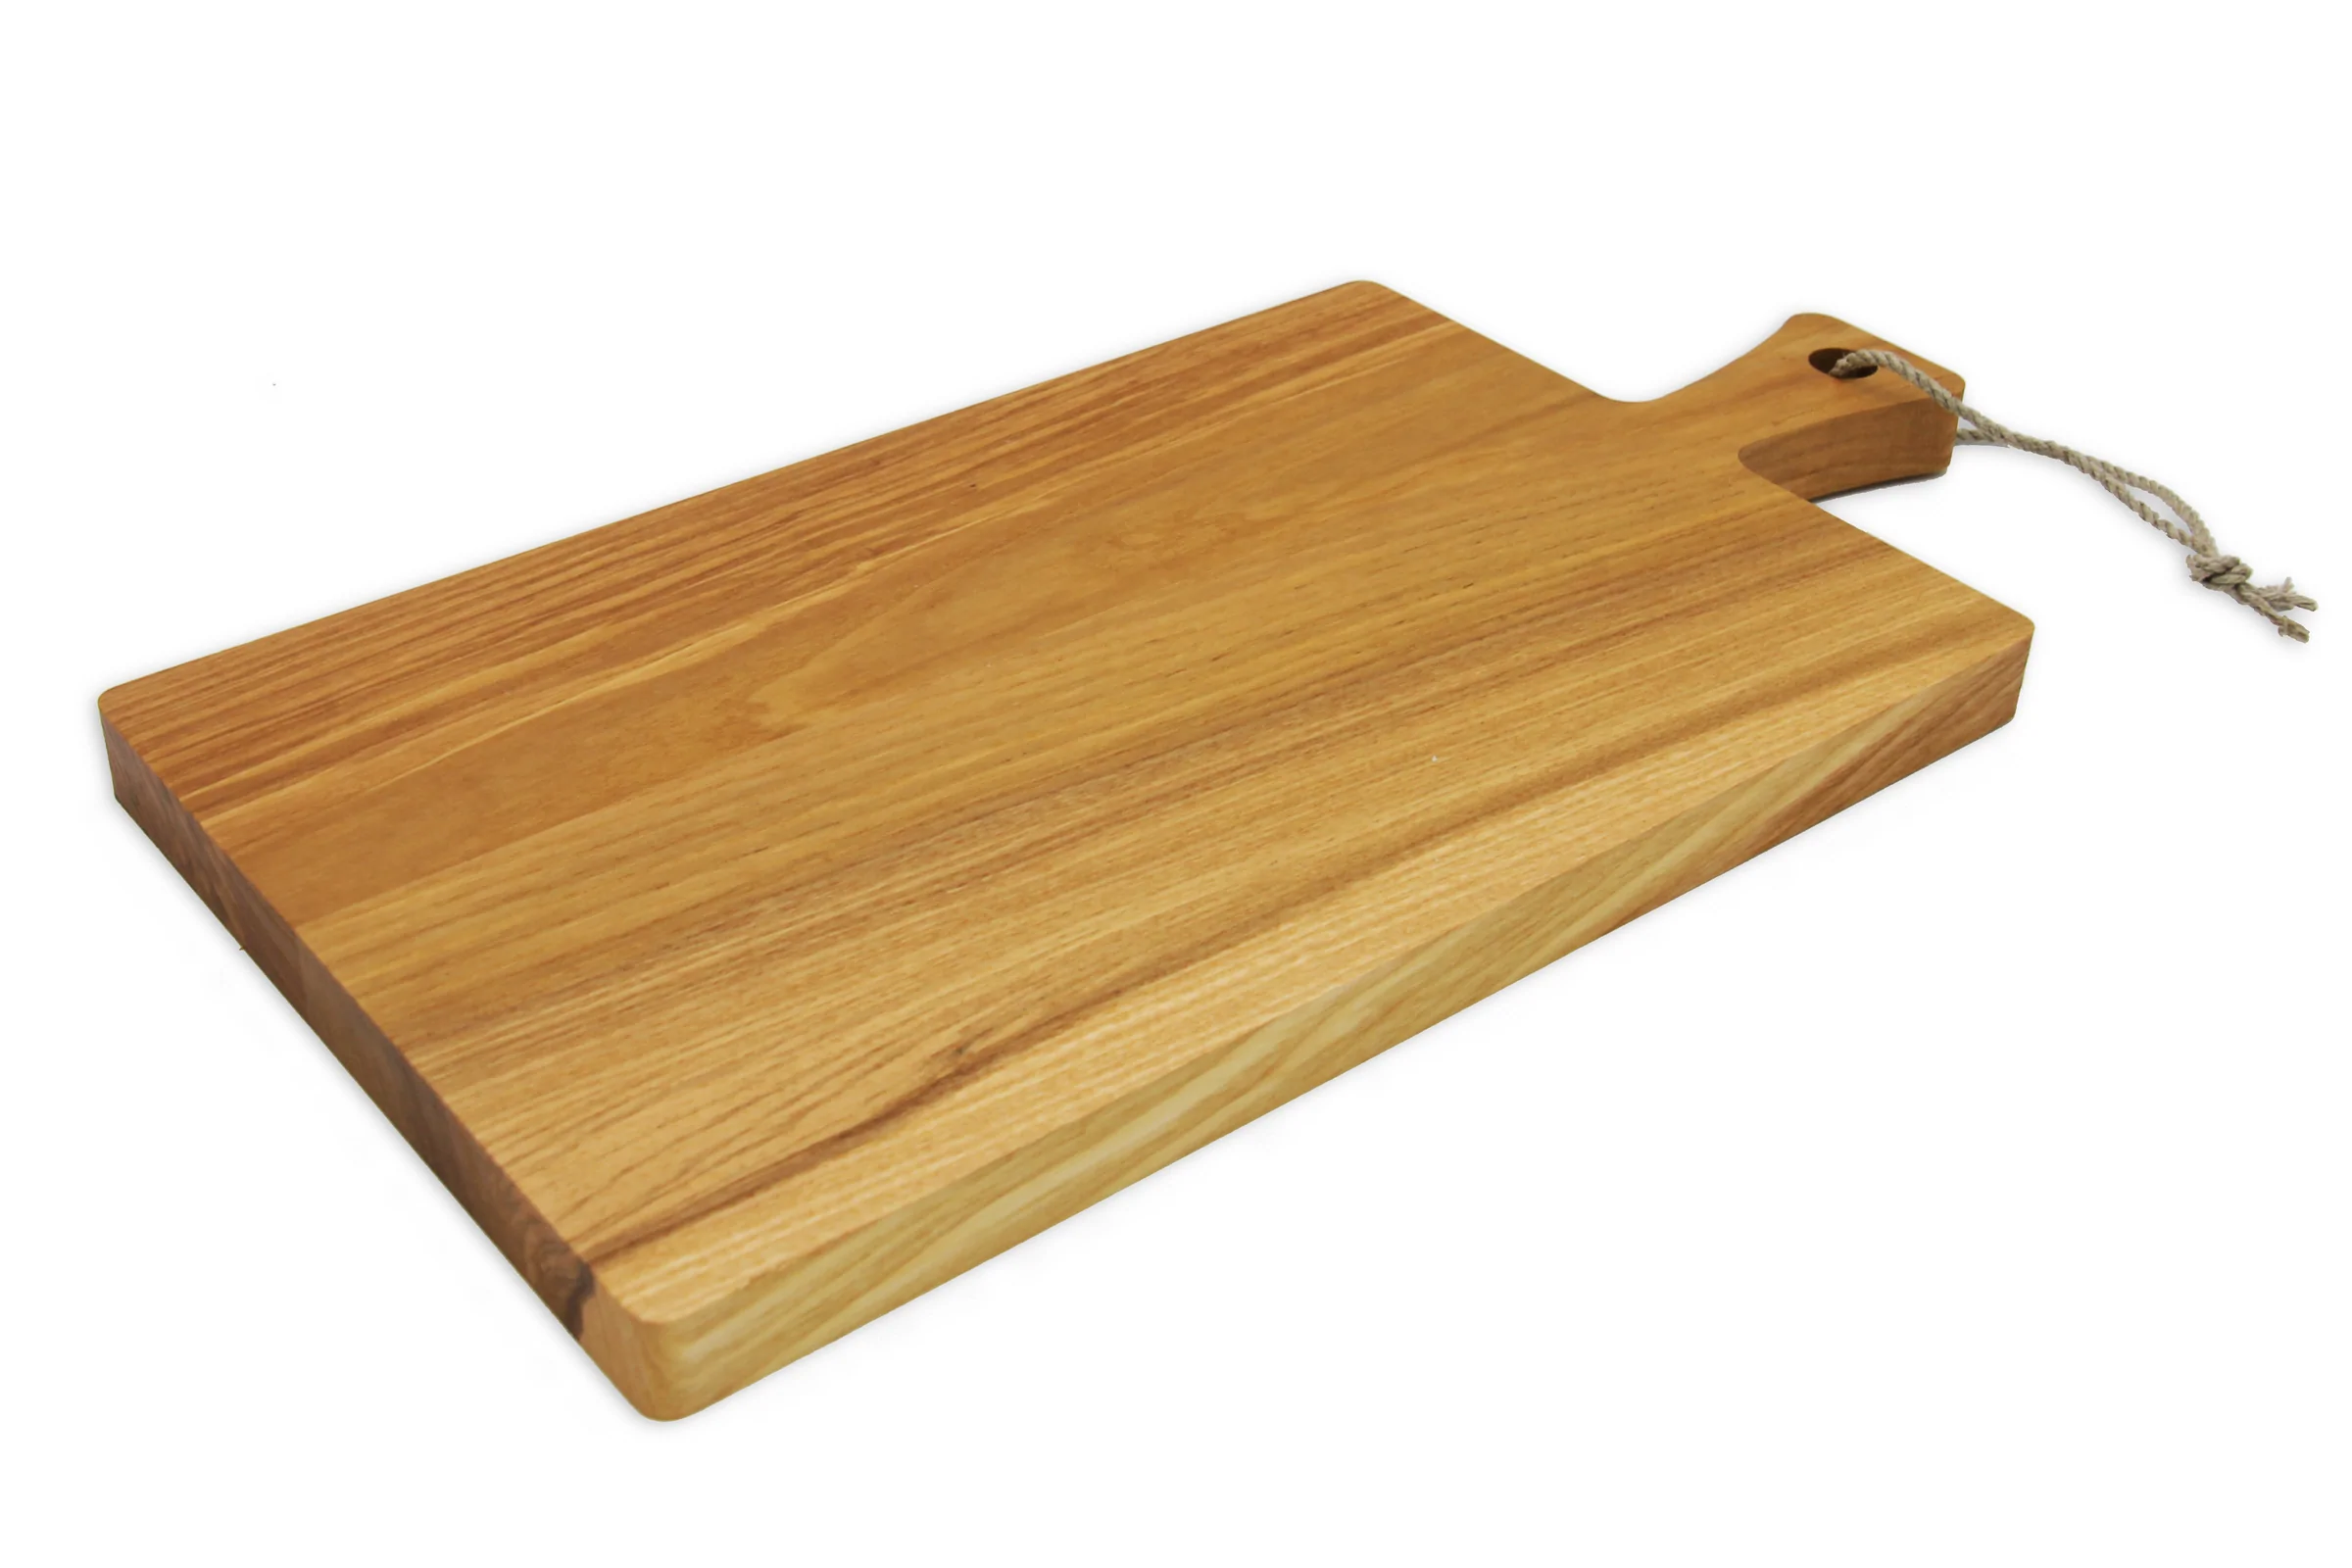 Tagliere personalizzato in legno di frassino (40 x 20 cm) - Fauske